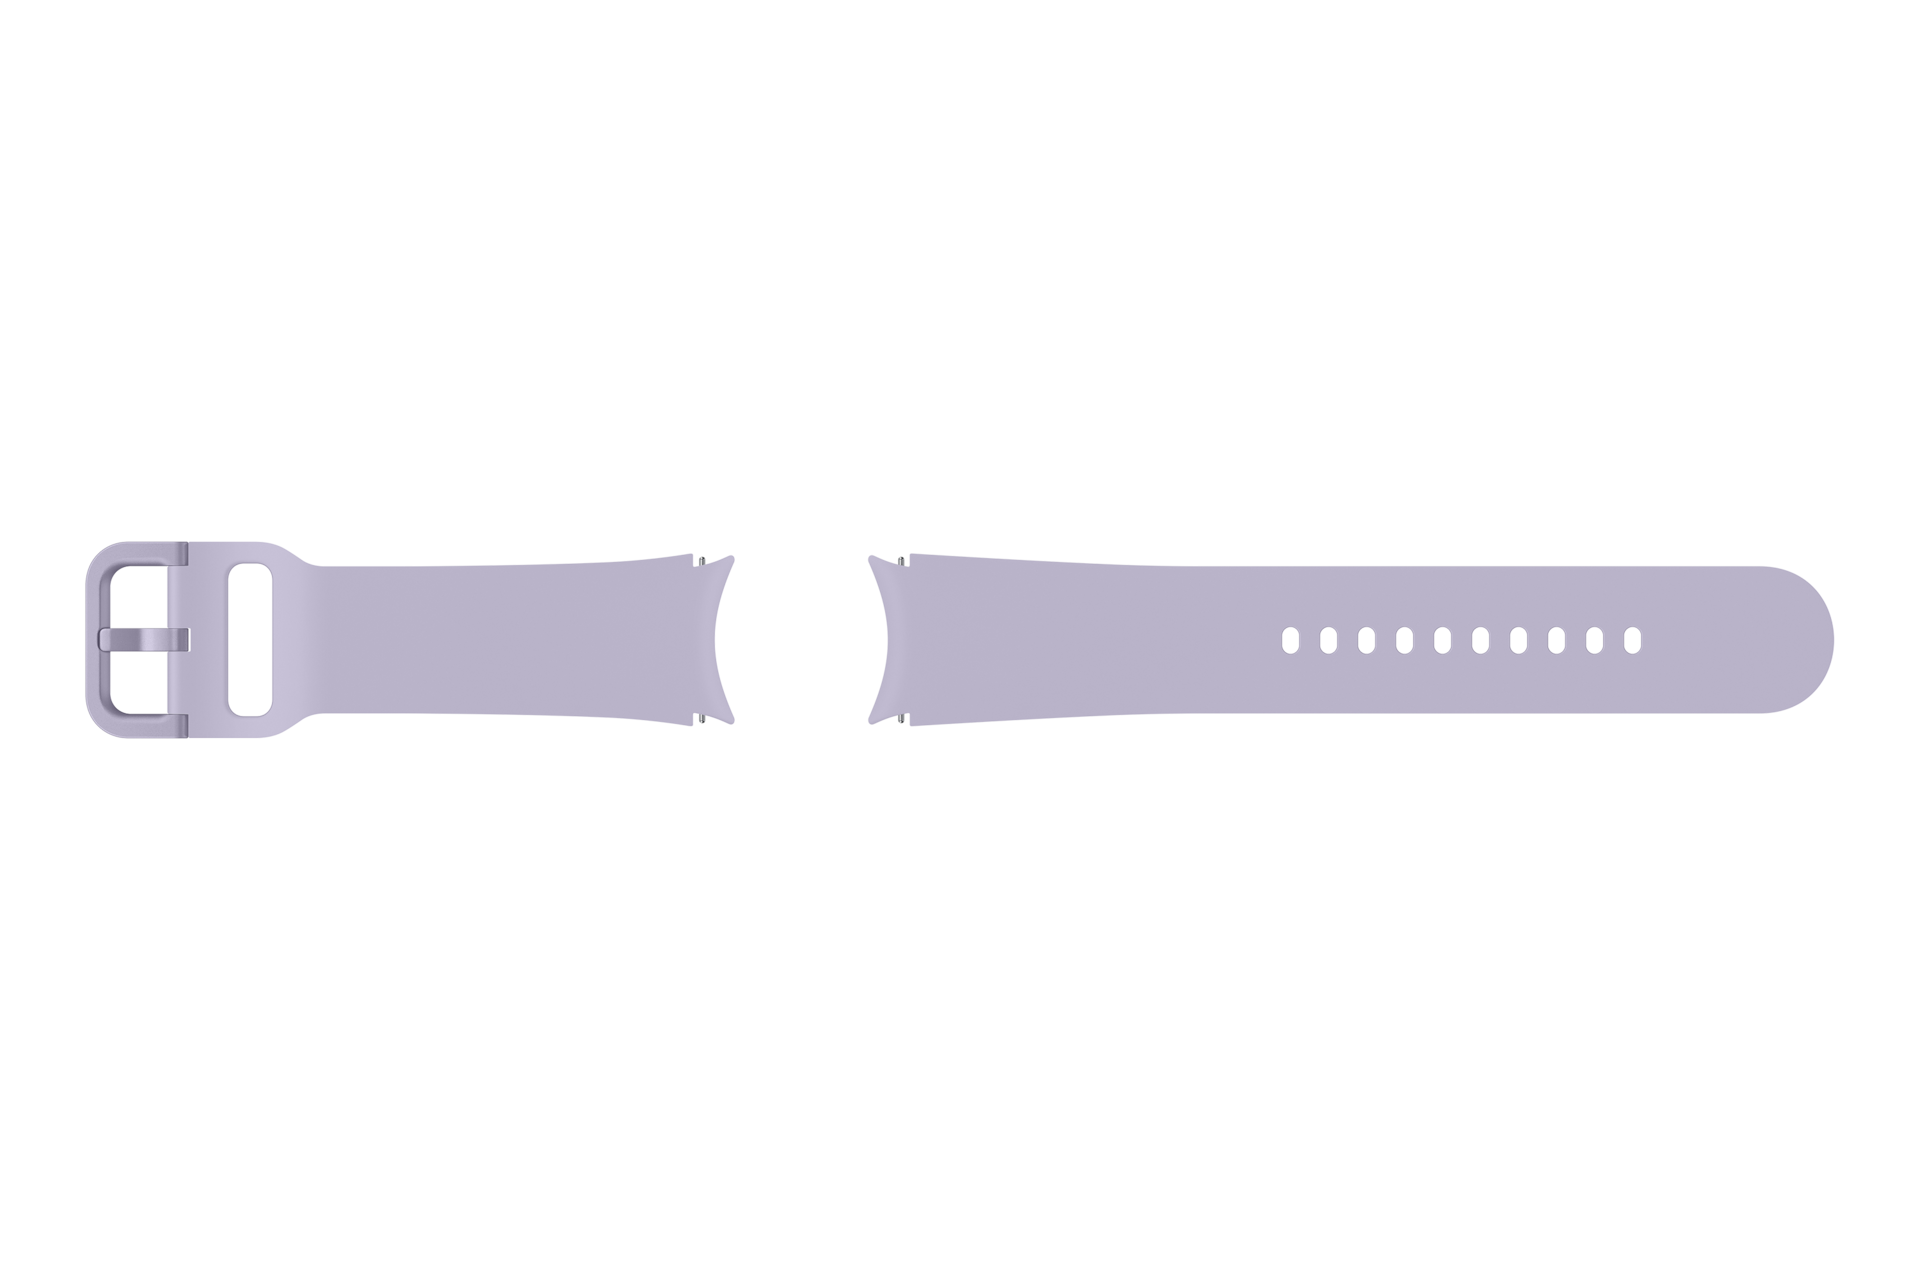 Sport Band for all Galaxy Watch4/Watch5 (20mm, M/L), ET-SFR91LVEGEU